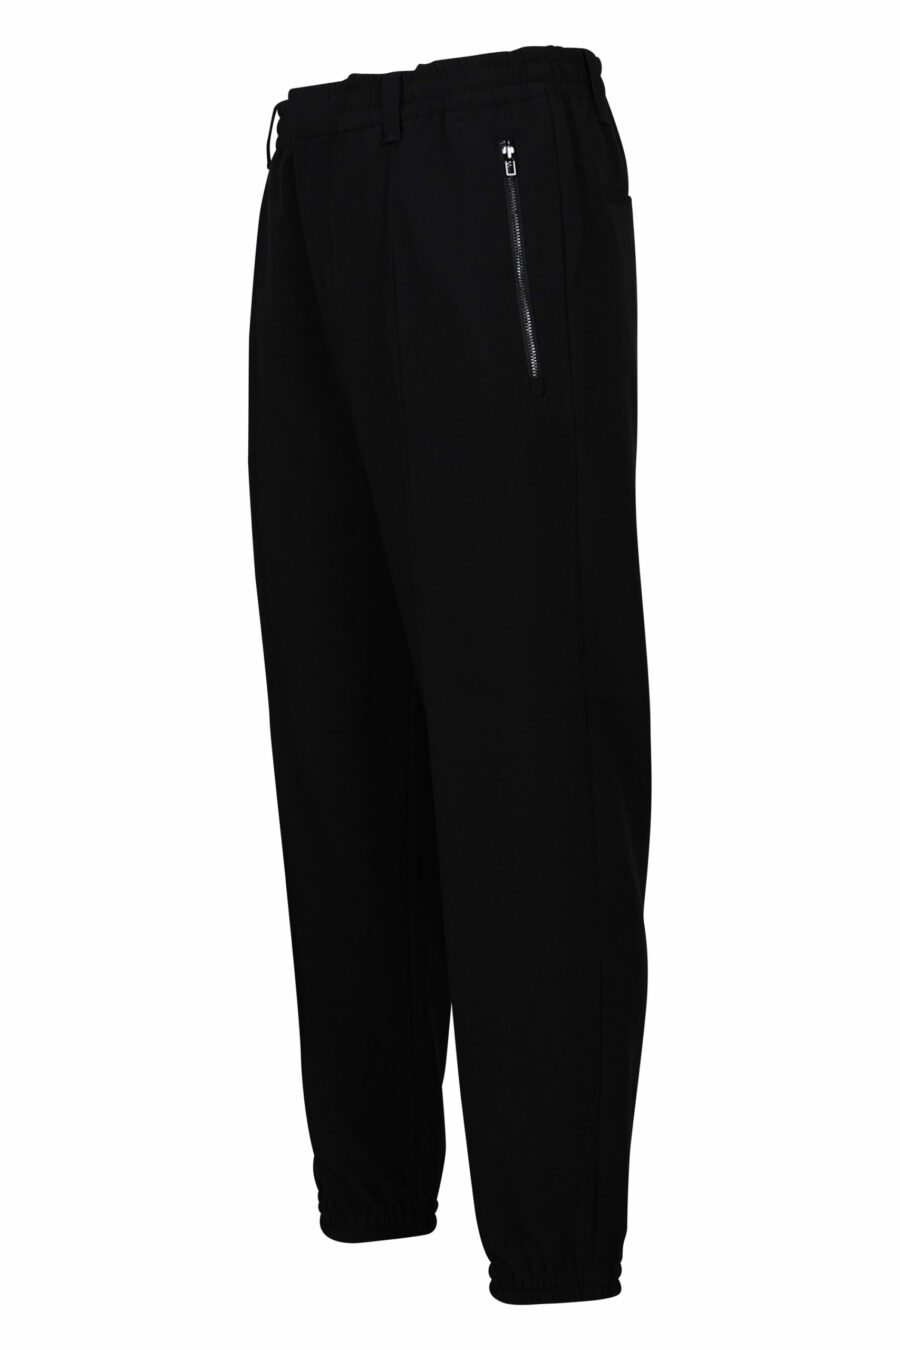 Pantalón de vestir negro con minilogo - 8057767410278 1 scaled